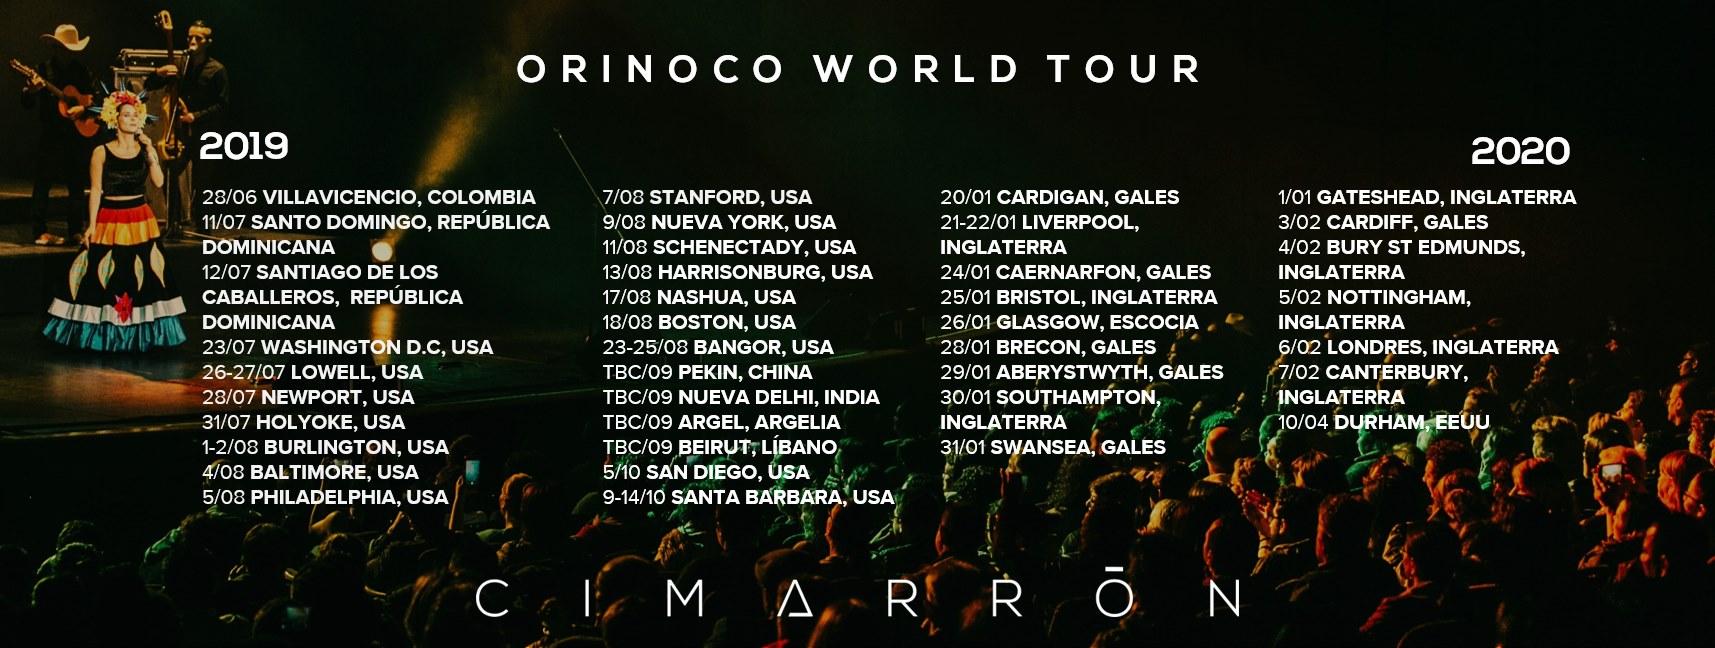 Las presentaciones internacionales de Cimarrón este 2019 en su 'Orinoco World Tour'.